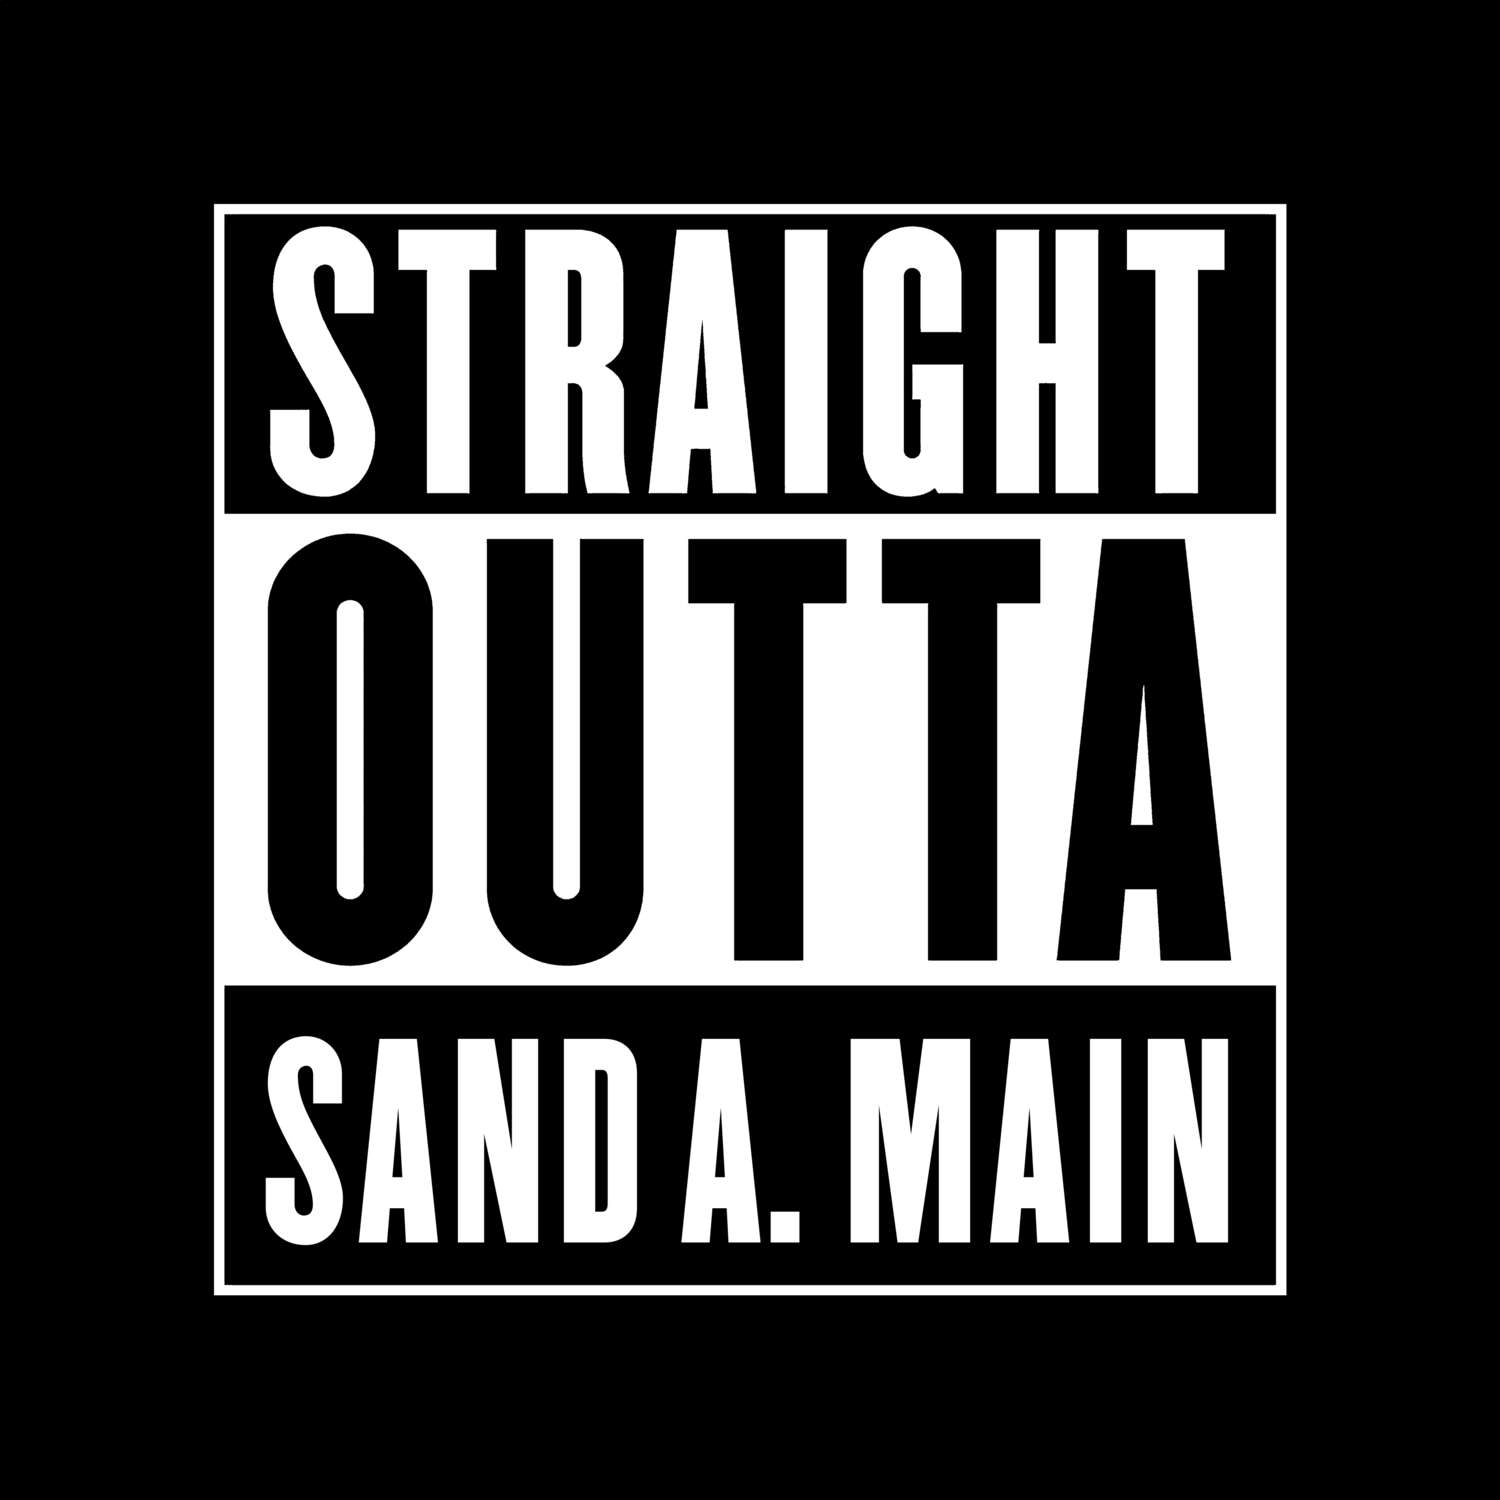 Sand a. Main T-Shirt »Straight Outta«